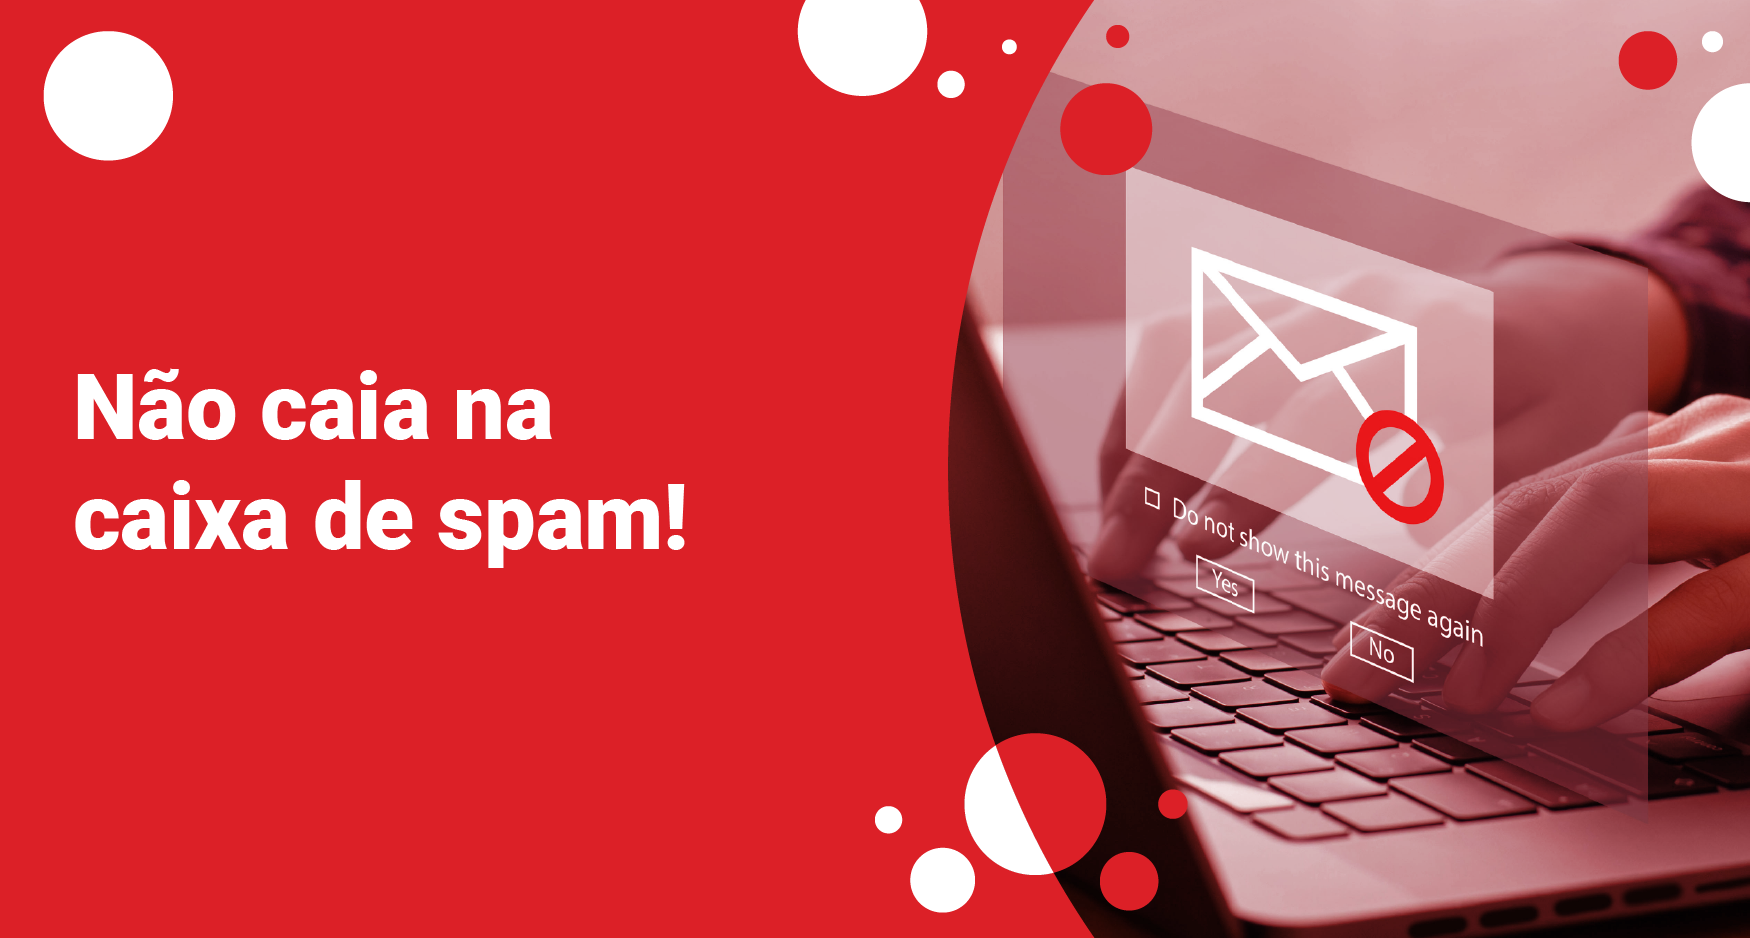 Não caia na caixa de spam!